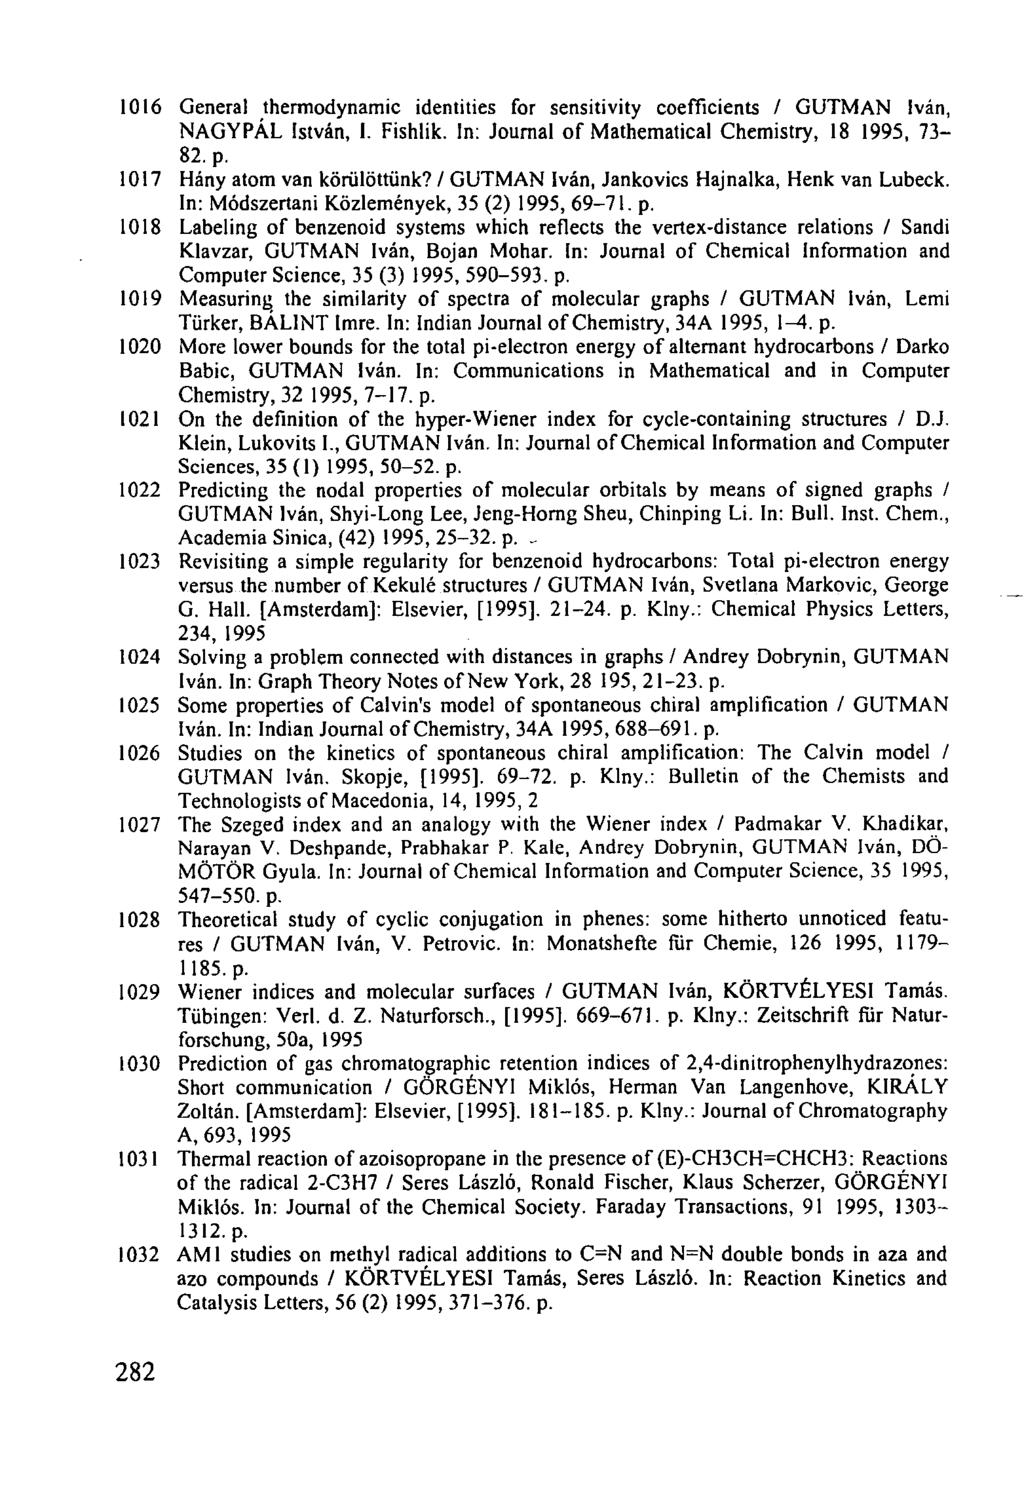 1016 General thermodynamic identities for sensitivity coefficients / GUTMAN Iván, NAGYPÁL István, I. Fishlik. In: Journal of Mathematical Chemistry, 18 1995, 73-82. p. 1017 Hány atom van körülöttünk?